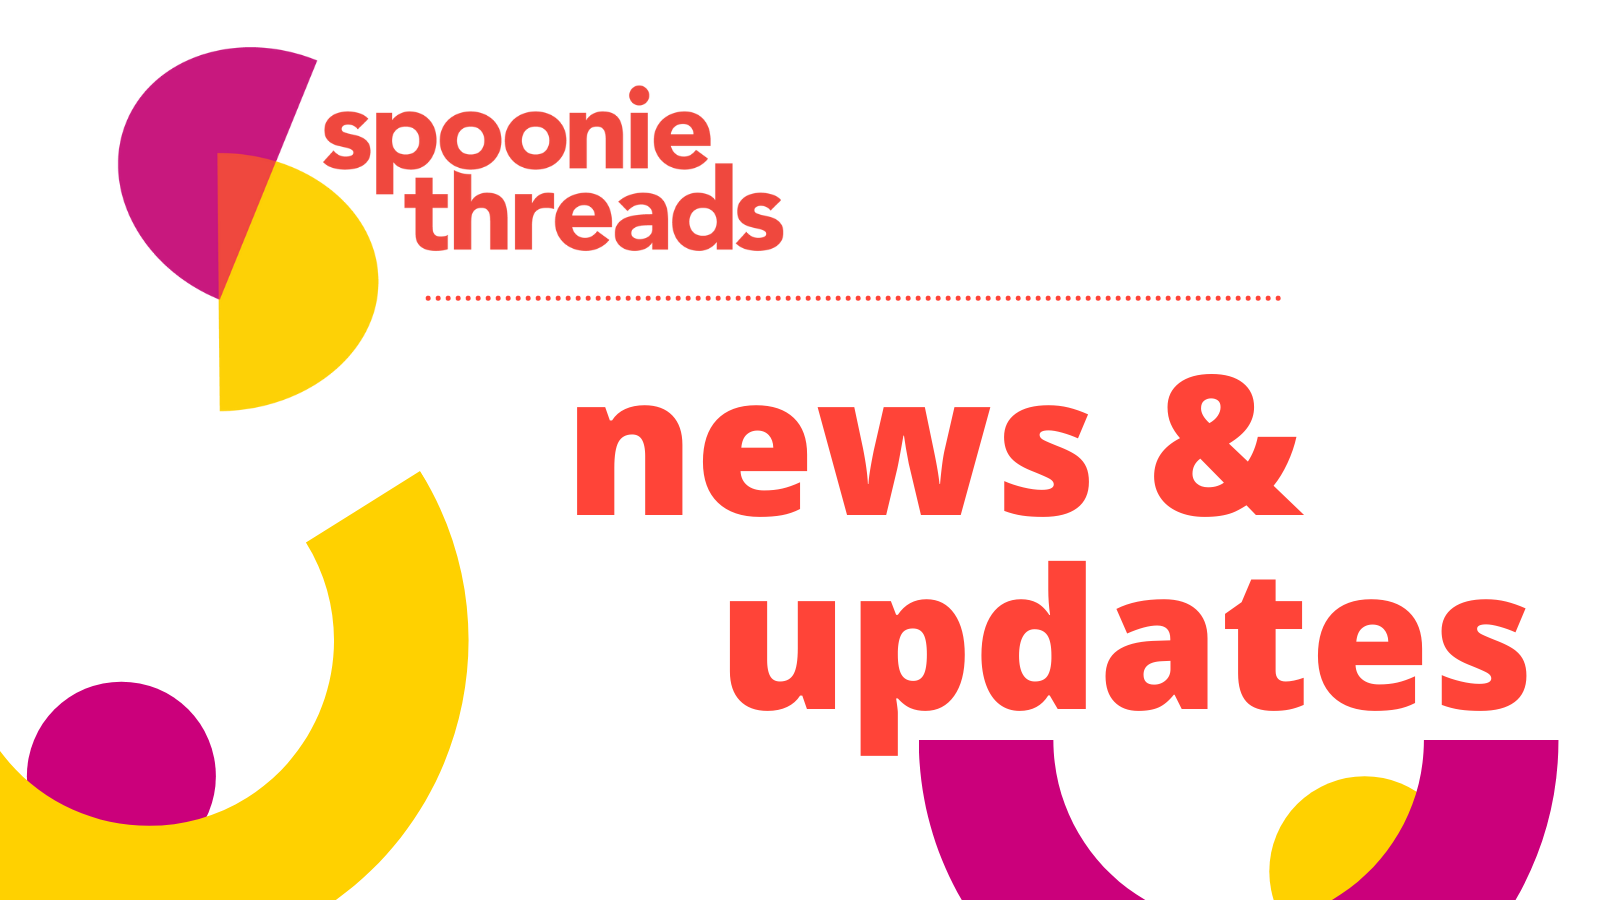 spoonie threads news & updates graphic